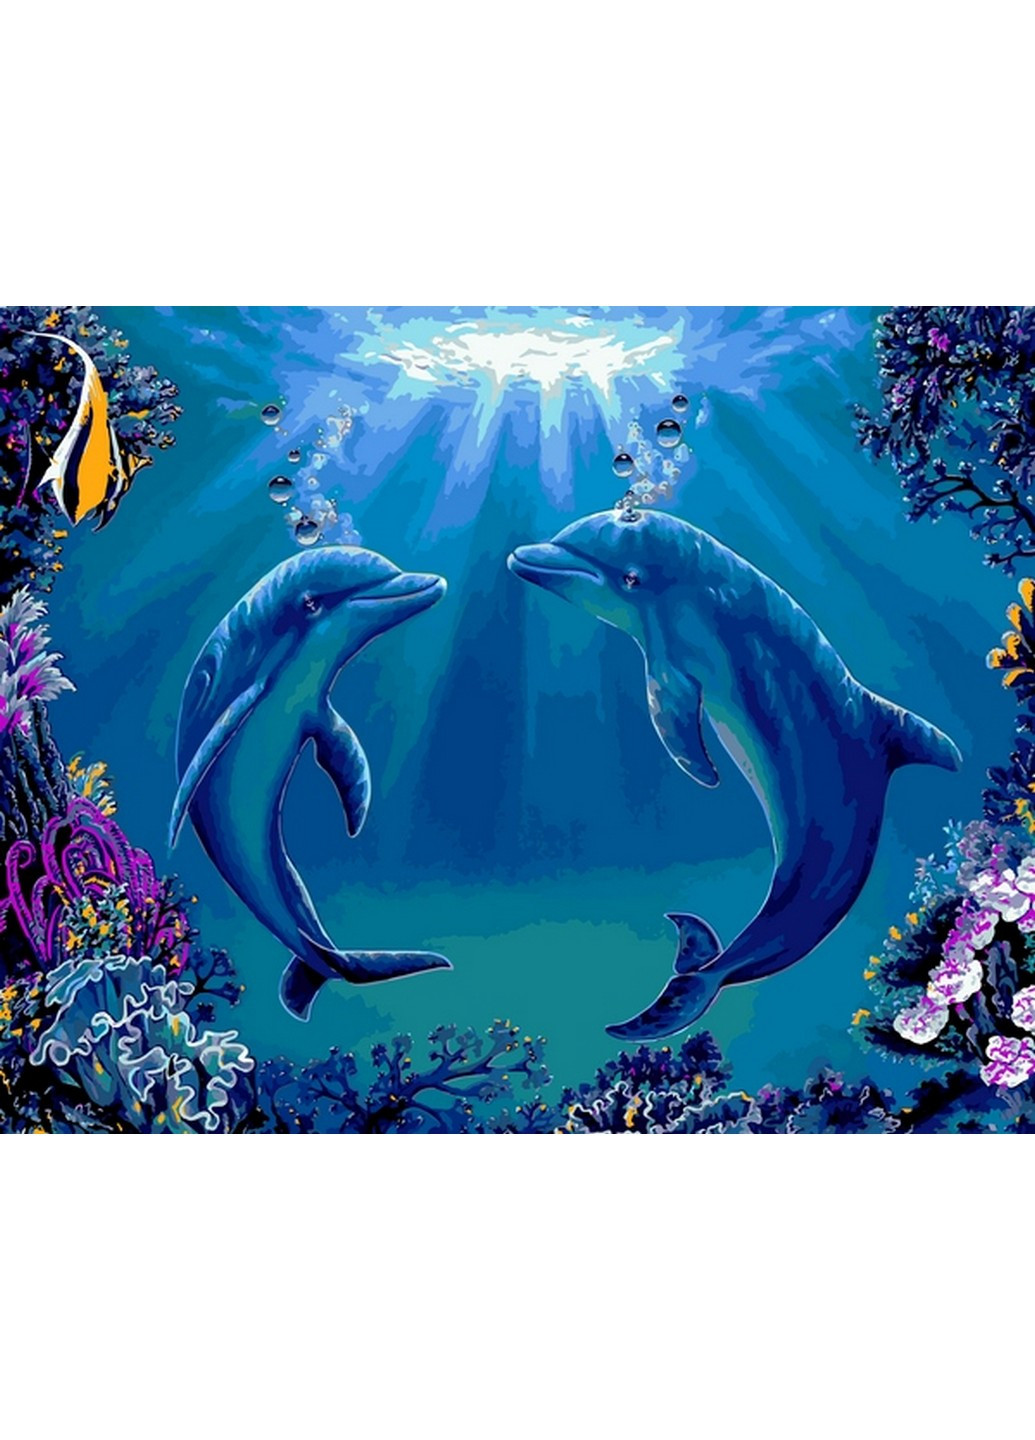 Картина по номерам Танец дельфинов Babylon комбинированные